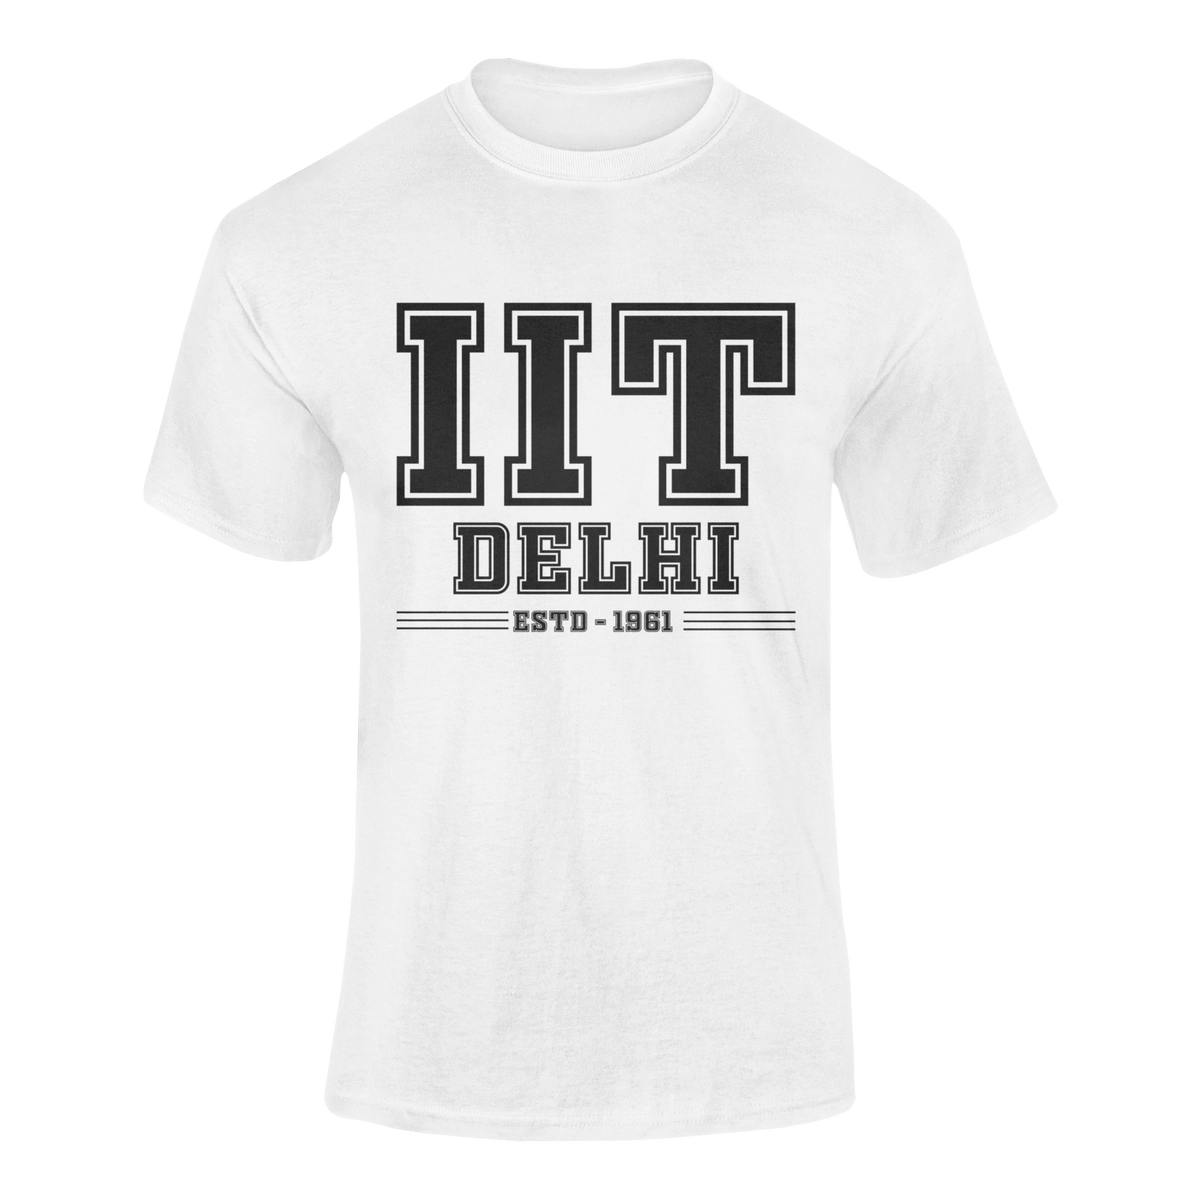 IIT DELHI - teeshood.com